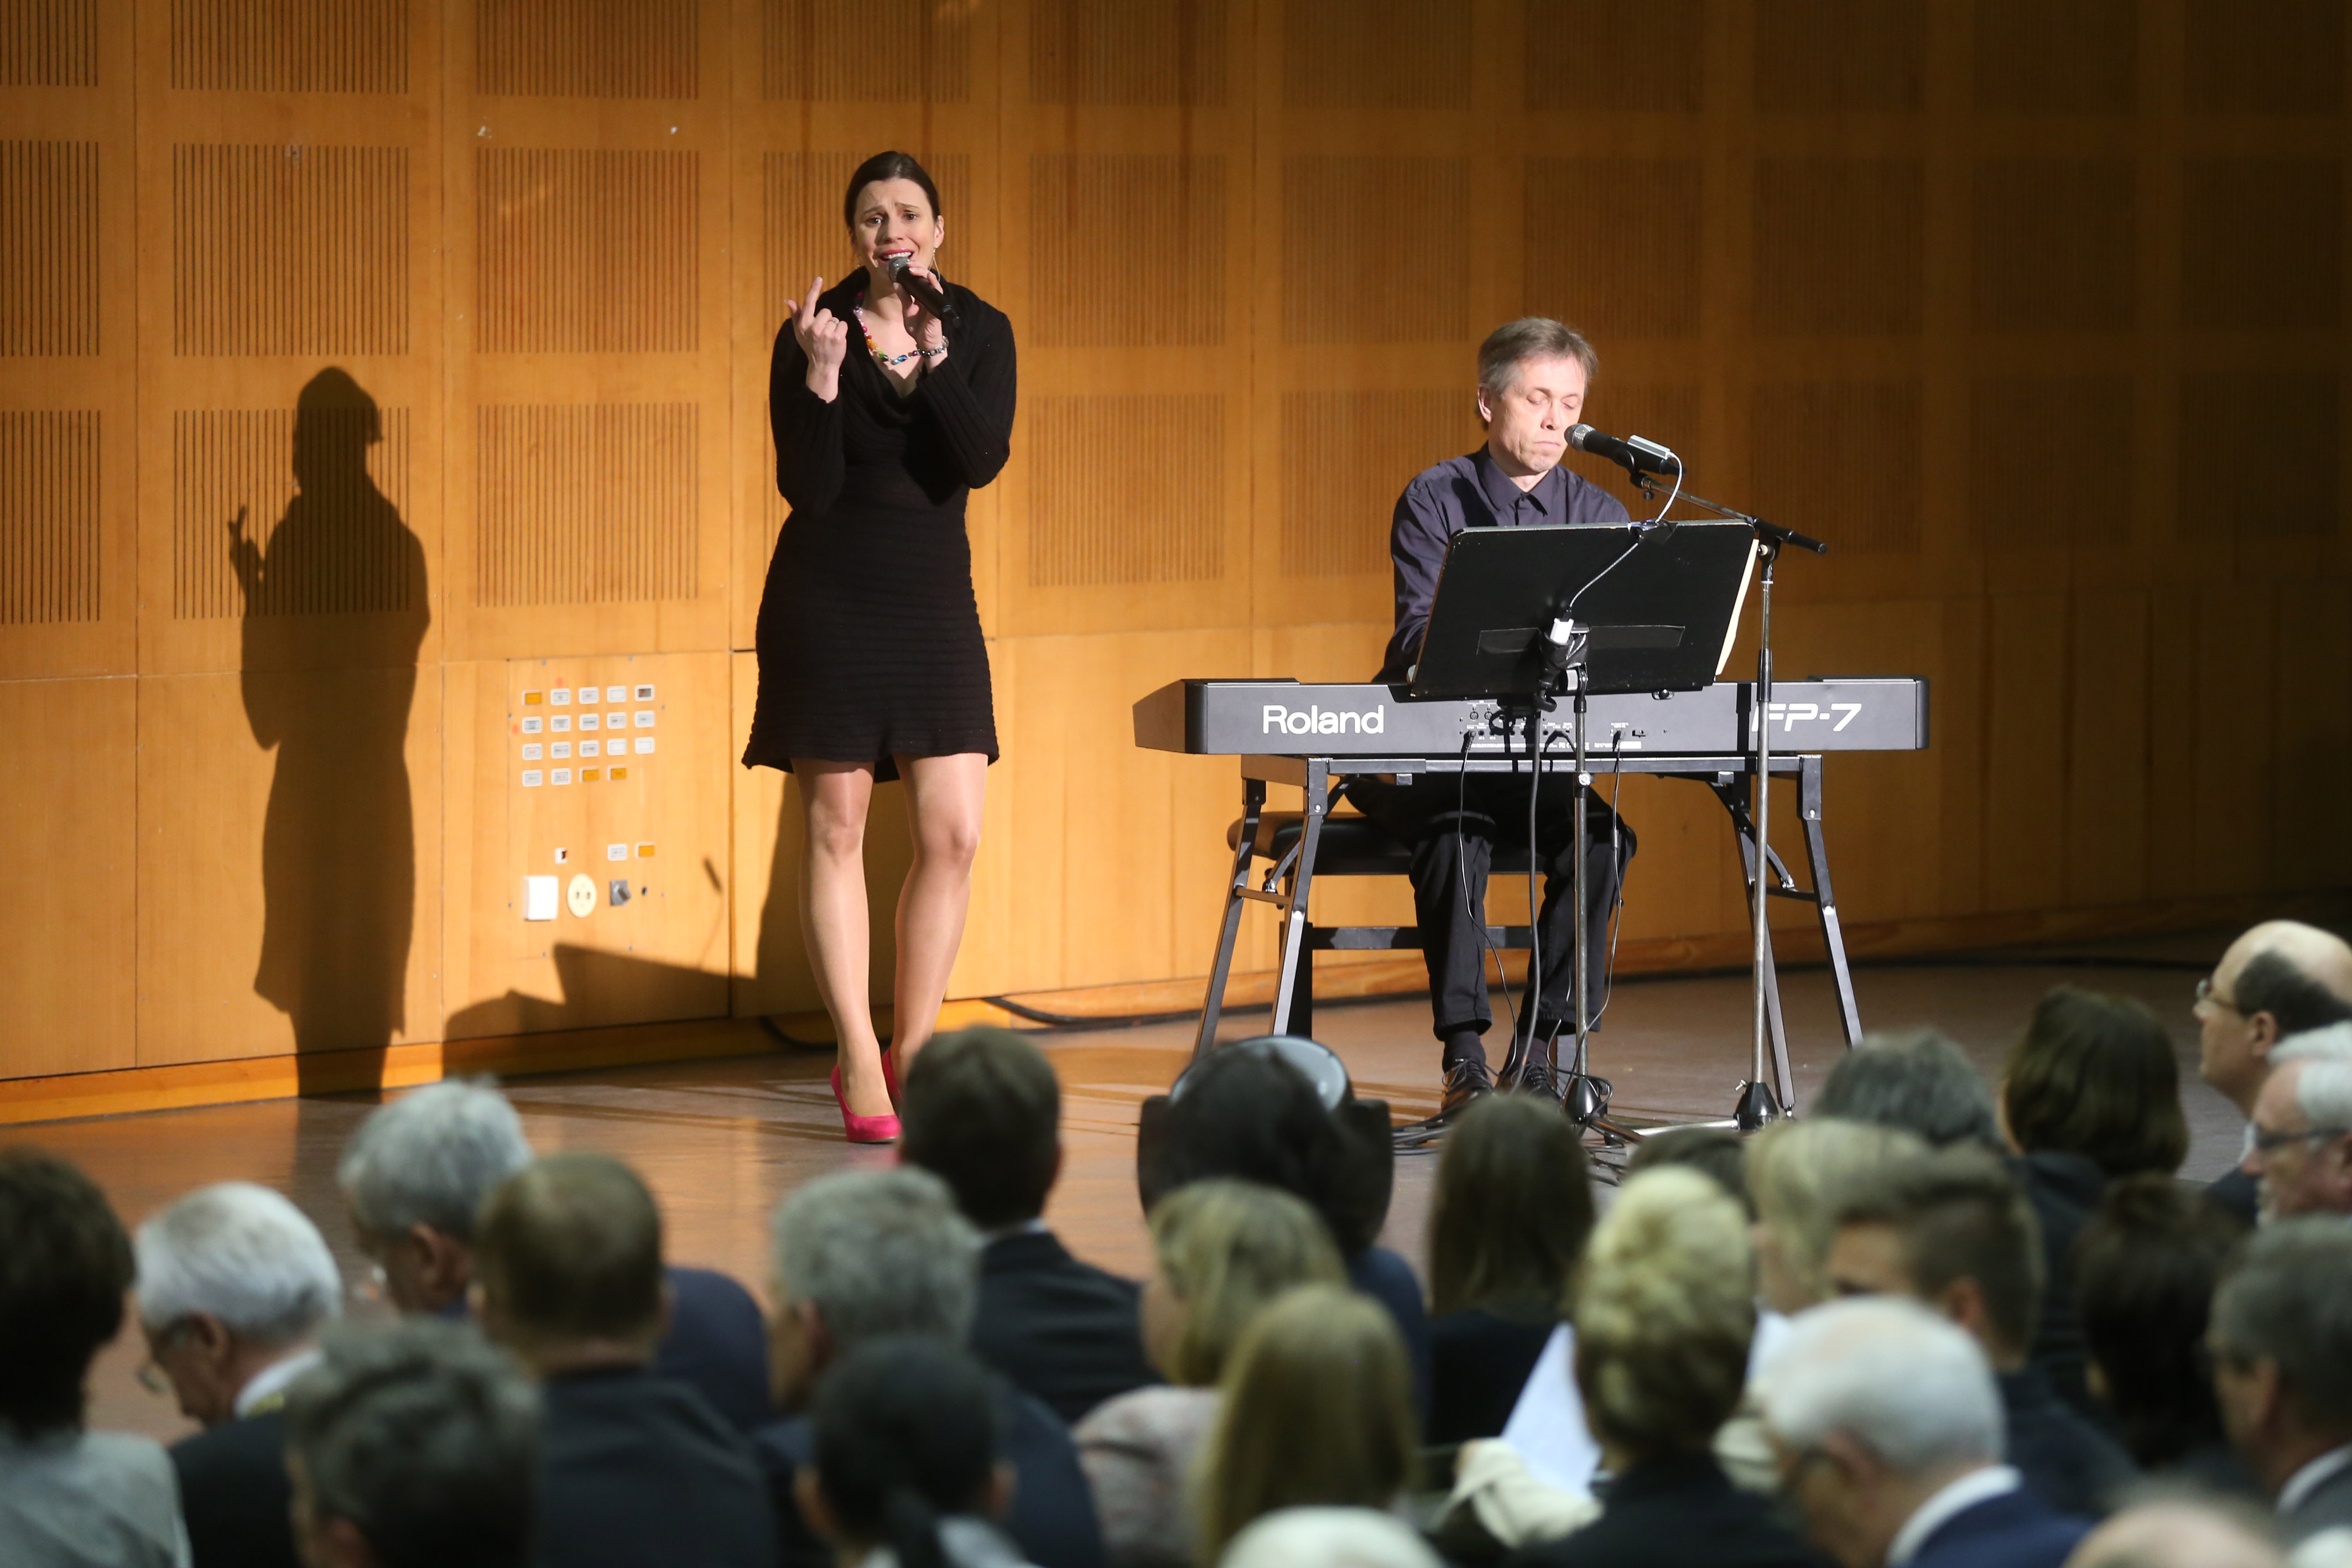 ... sowie Ulrich Nehls (Piano) und Rebecca Kunzelmann (Gesang) mit rockigen Klängen die Veranstaltung. (Bild: FAU/Kurt Fuchs)